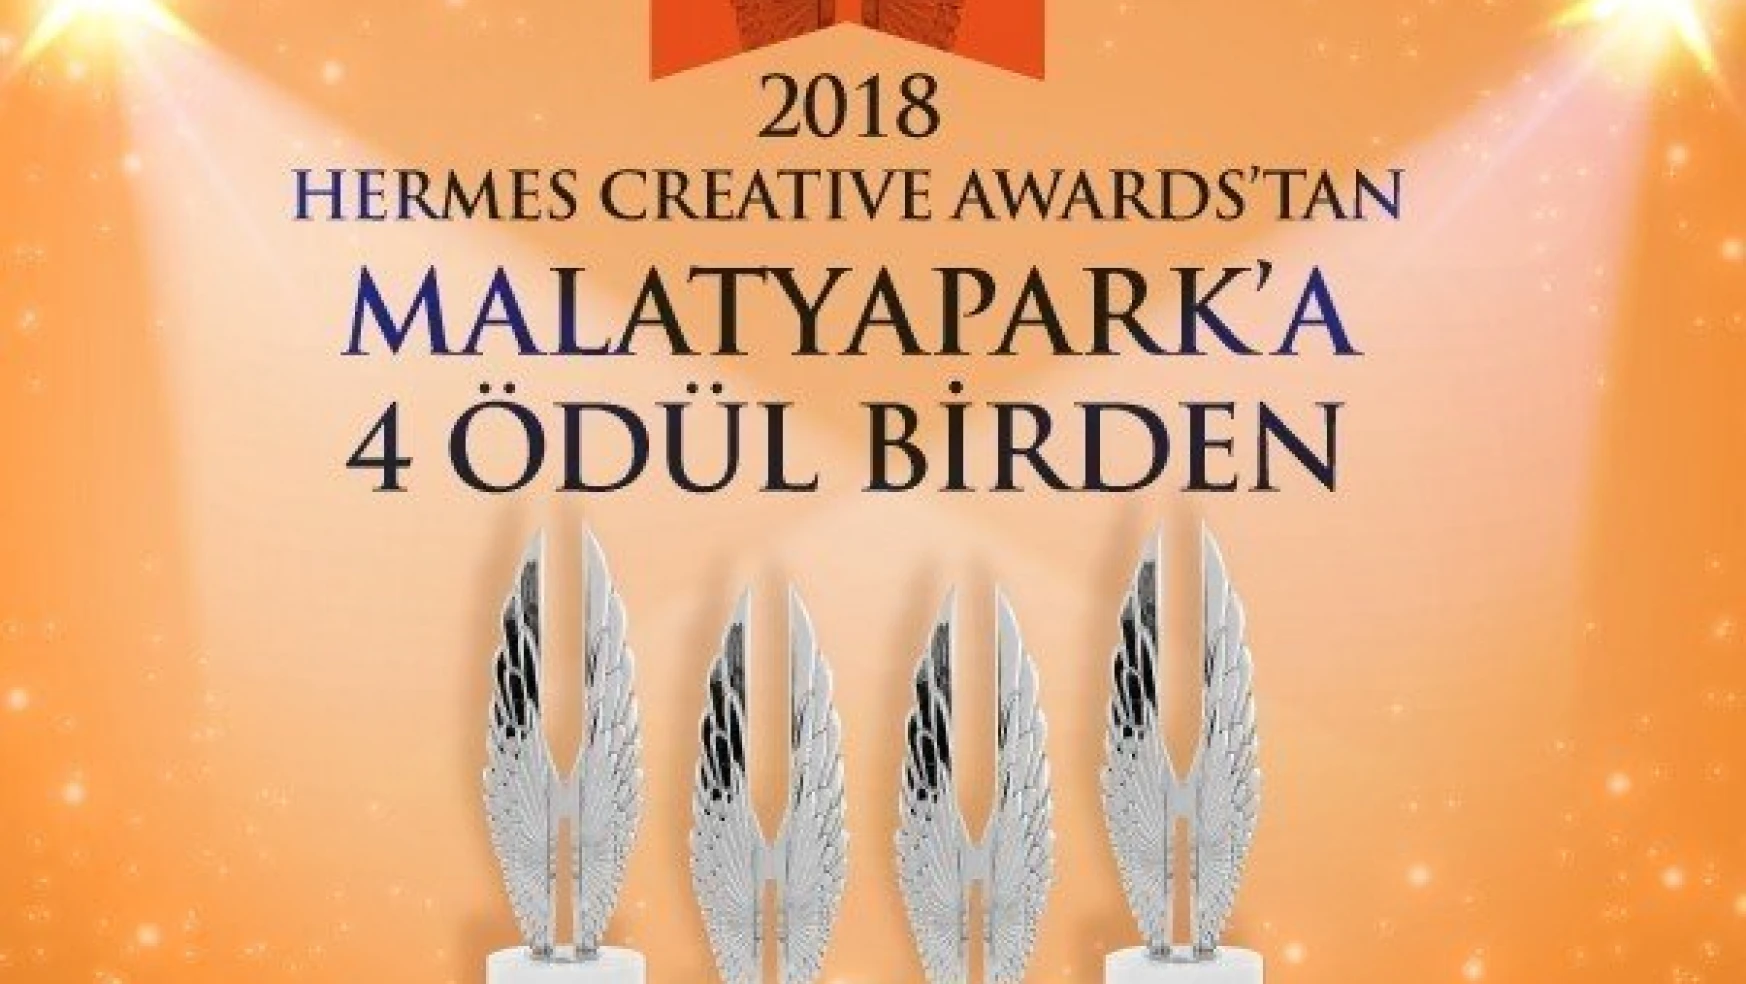 Malatya Park'a 4 uluslararası ödül